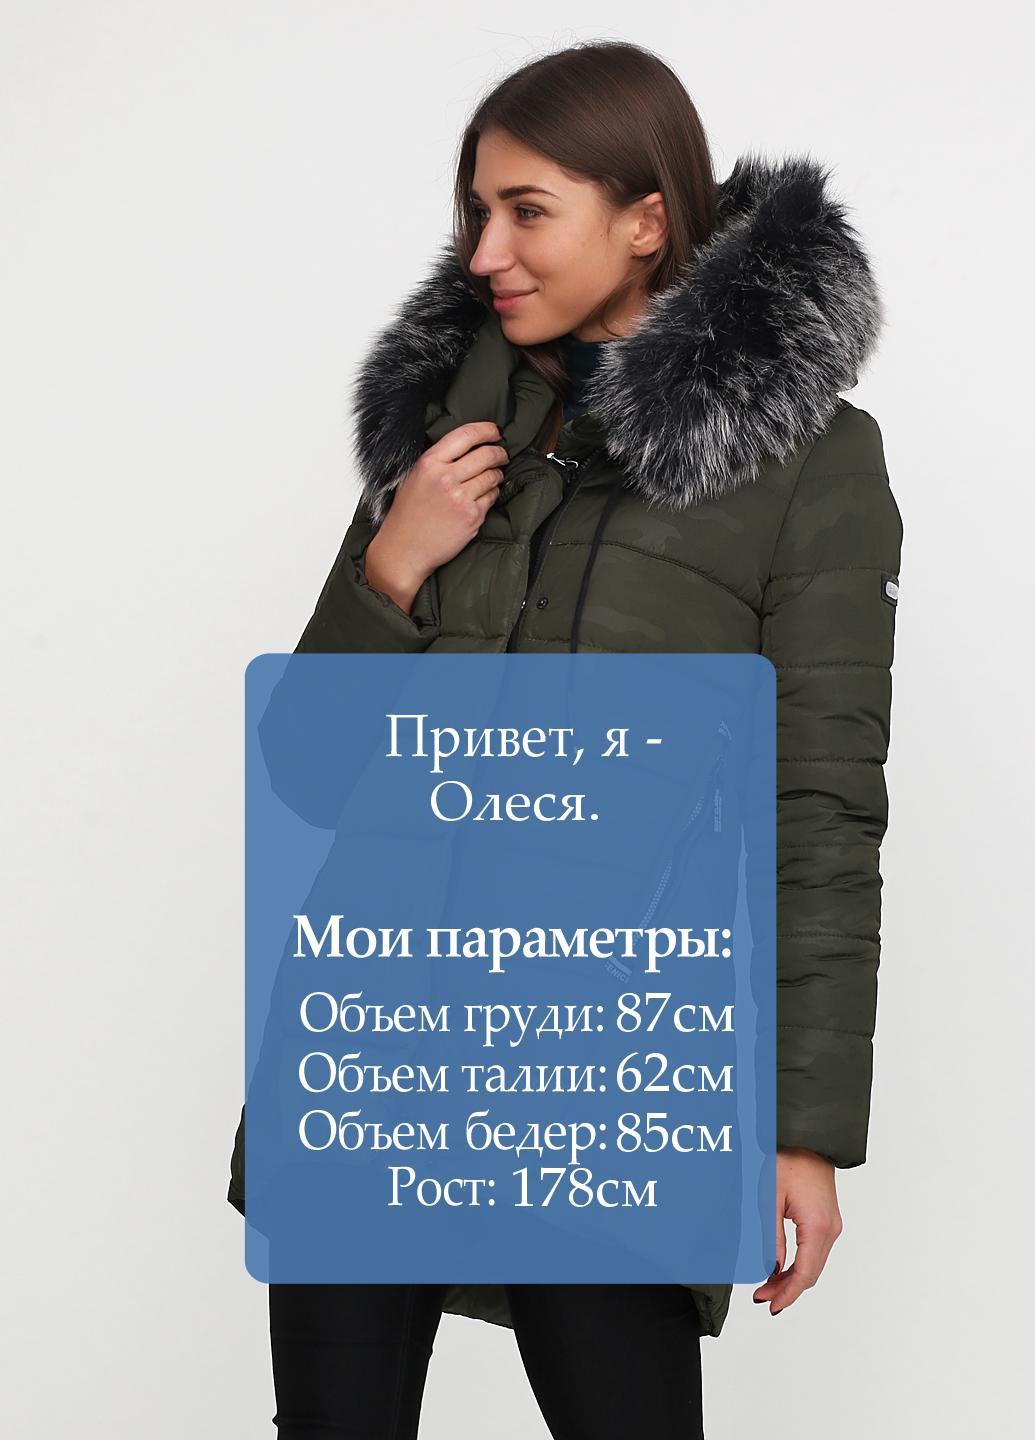 Оливкова (хакі) зимня куртка R&G